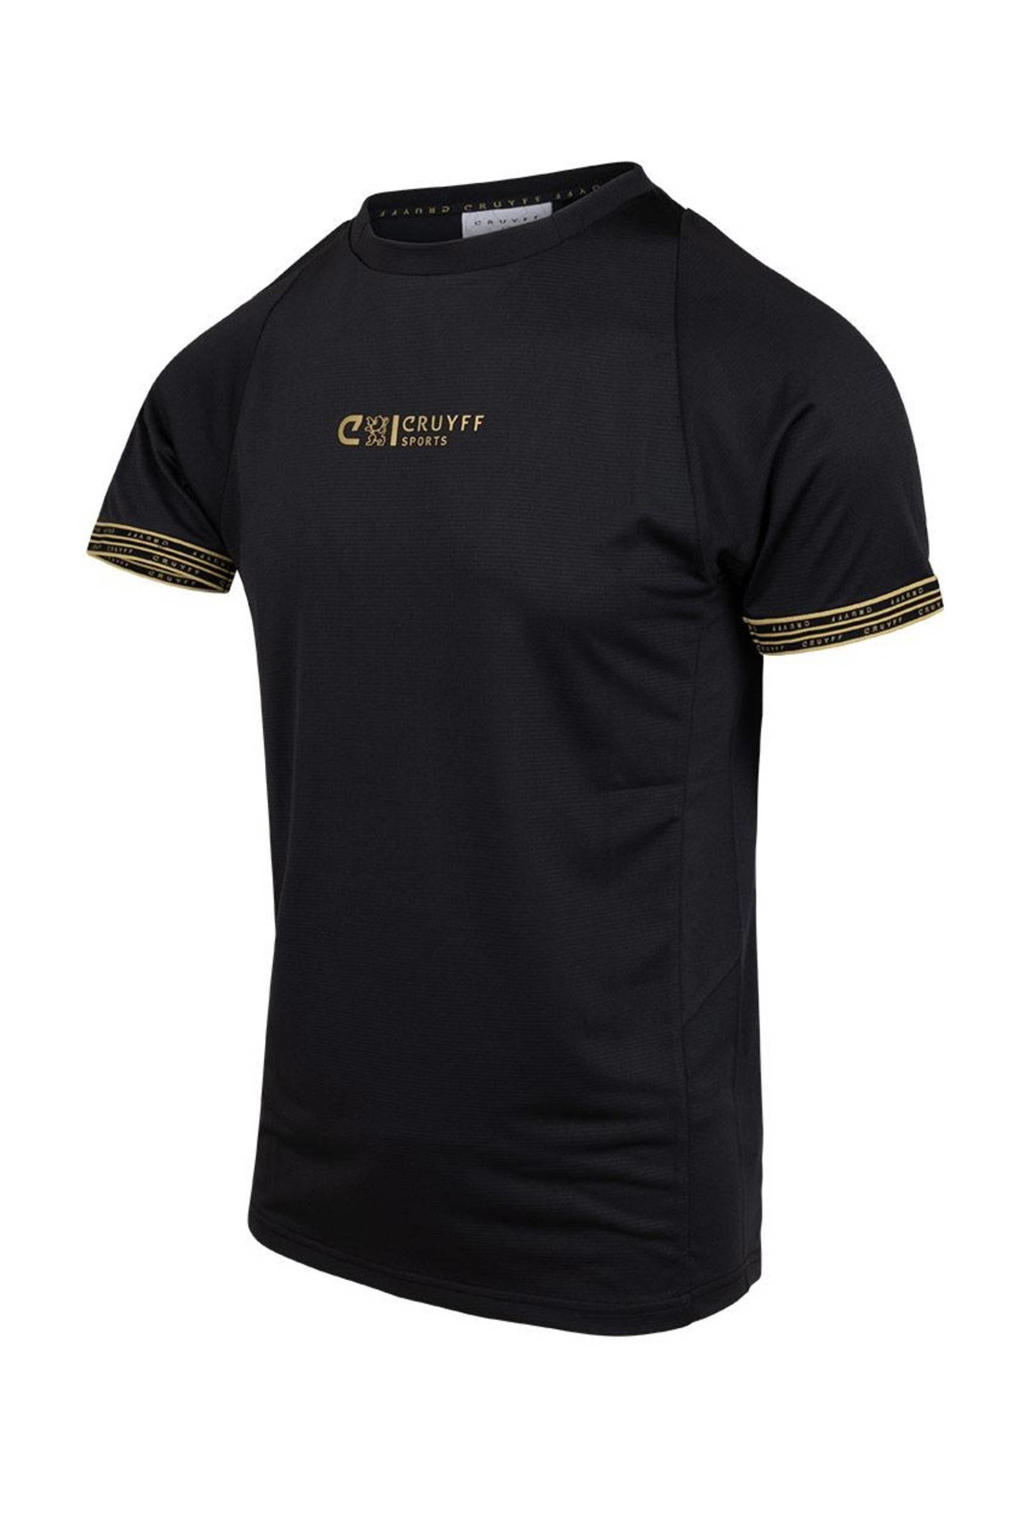 Zwarte heren Cruyff T-shirt Hoof van polyester met printopdruk, korte mouwen en ronde hals